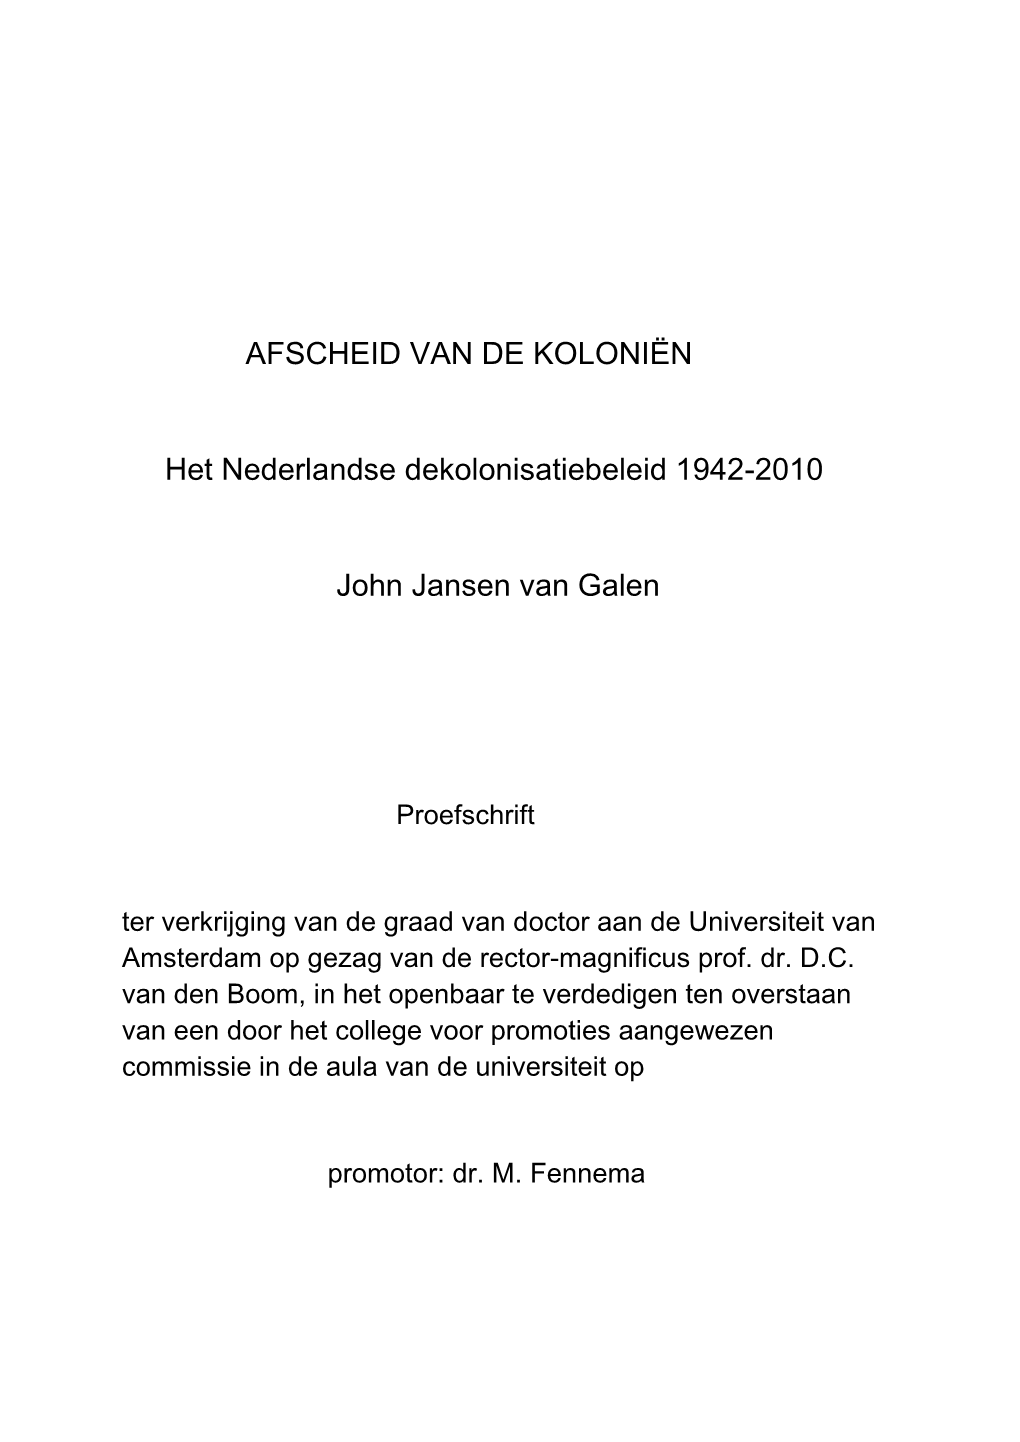 AFSCHEID VAN DE KOLONIËN Het Nederlandse Dekolonisatiebeleid